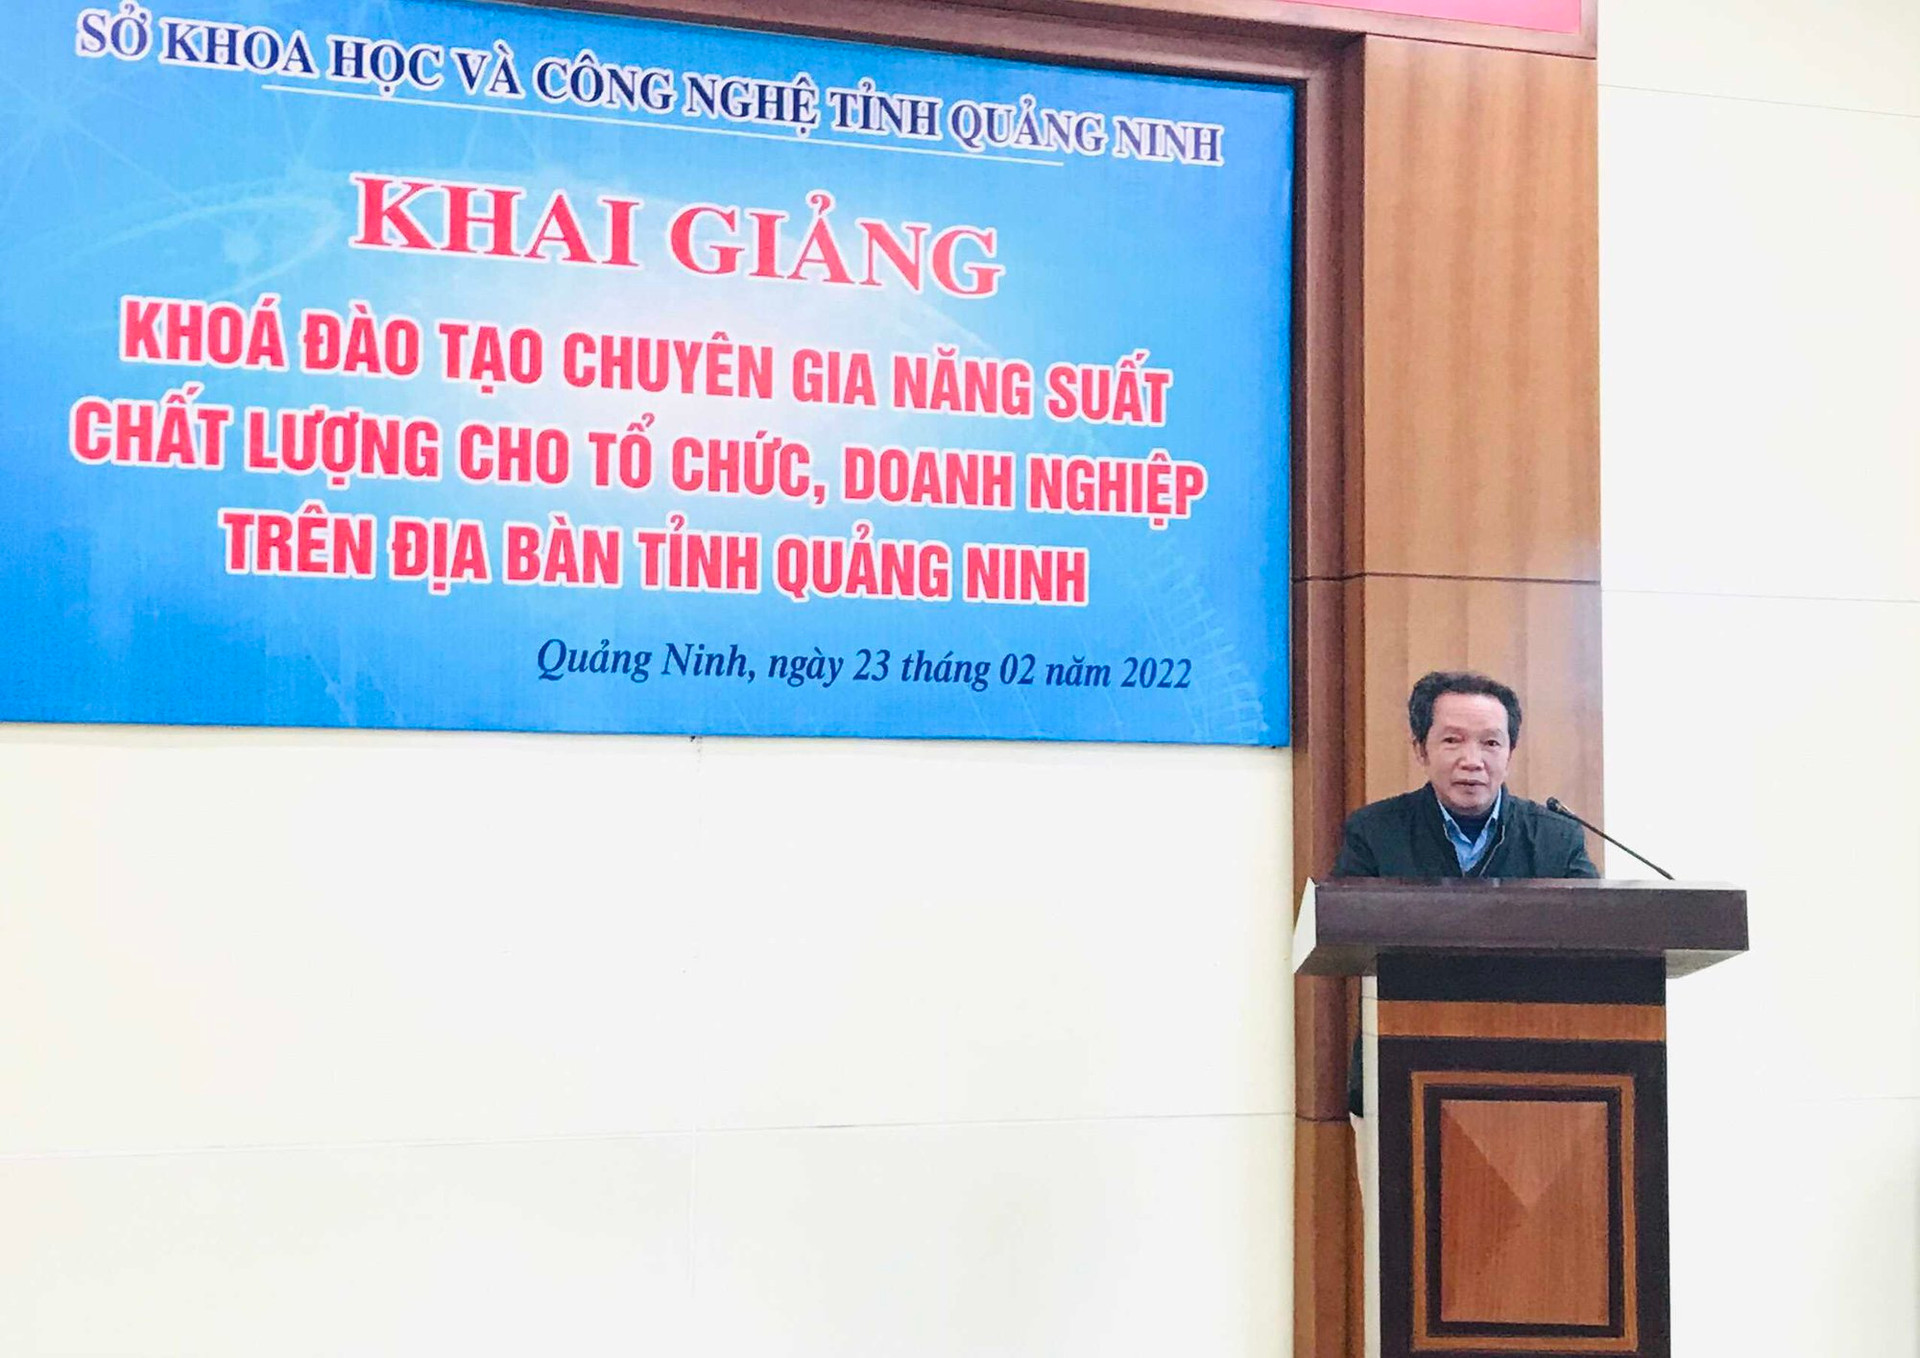 Một khoá đào tạo chuyên gia năng suất chất lượng cho tổ chức, doanh nghiệp được tổ chức tại tỉnh Quảng Ninh.